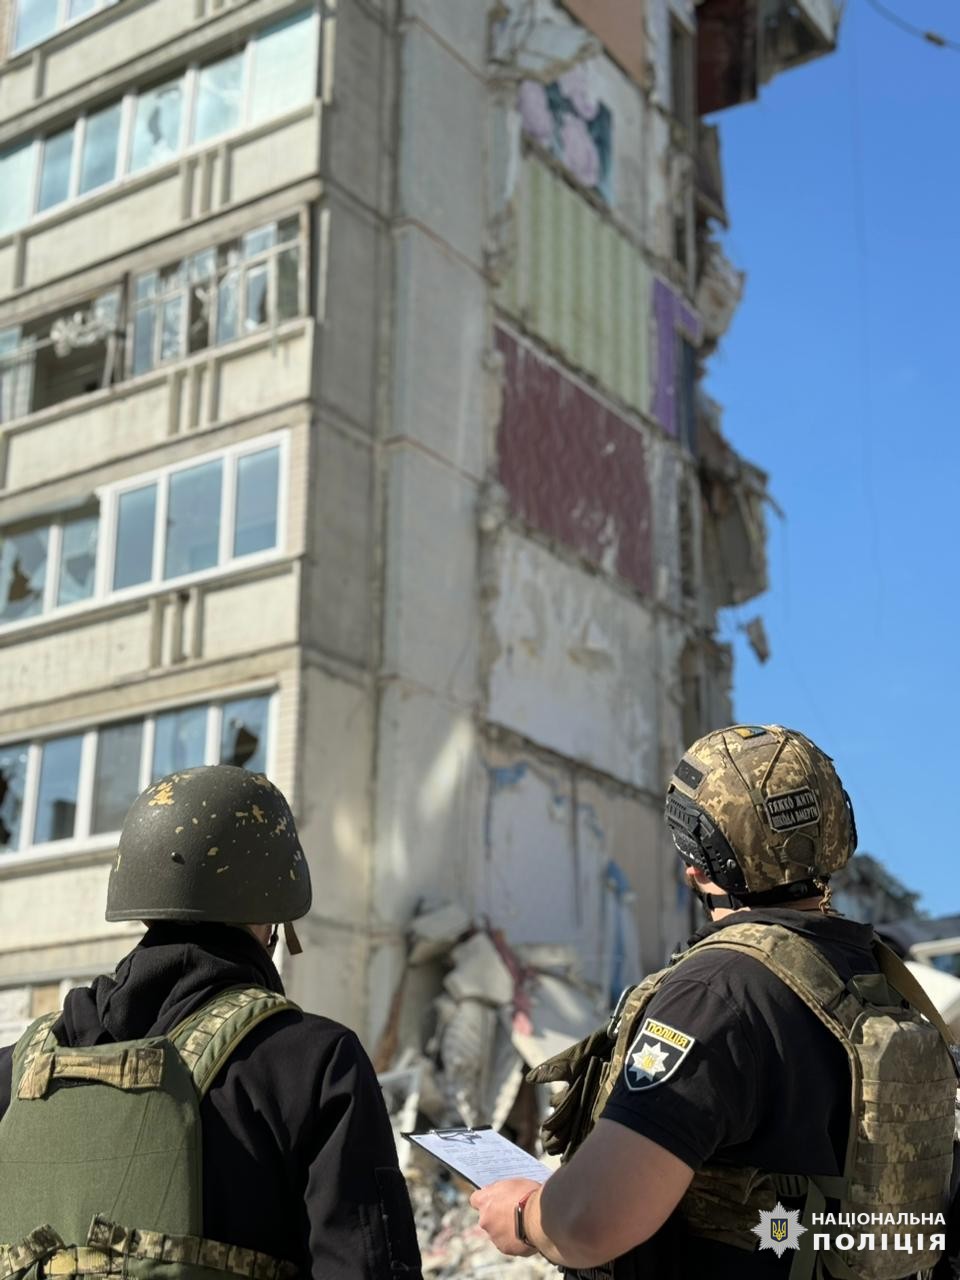 Россияне сбросили на жилой дом в Волчанске планирующий боеприпас, есть погибшие: фото — фото